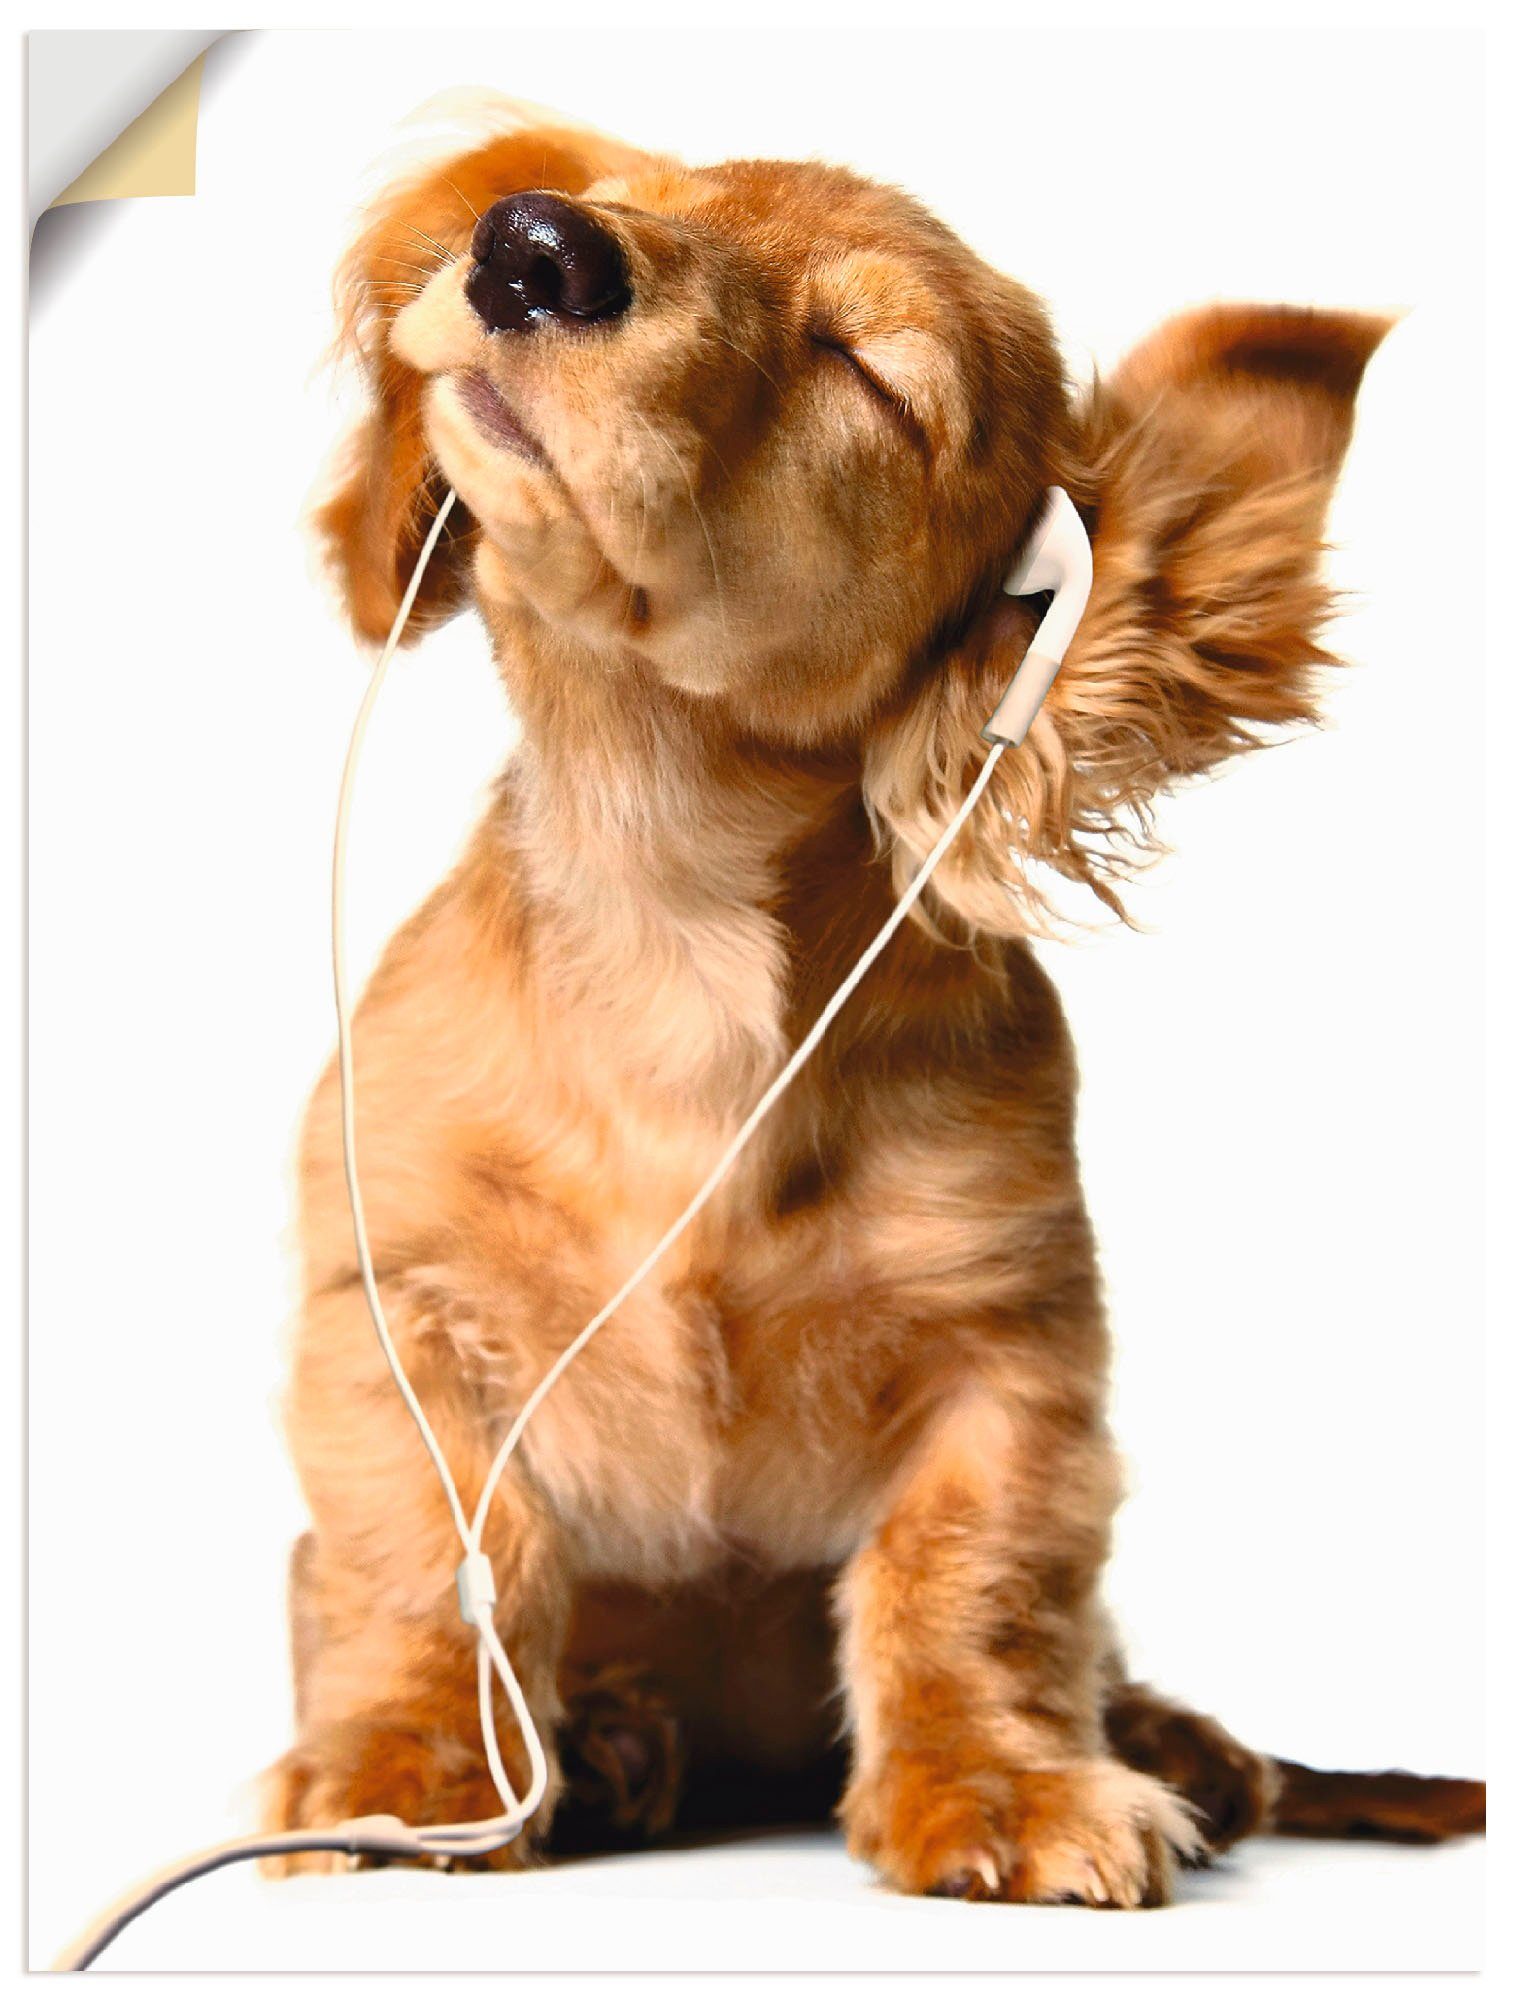 Artland Artprint Jonge hond die naar muziek door hoofdtelefoon luistert in vele afmetingen & productsoorten -artprint op linnen, poster, muursticker / wandfolie ook geschikt voor d